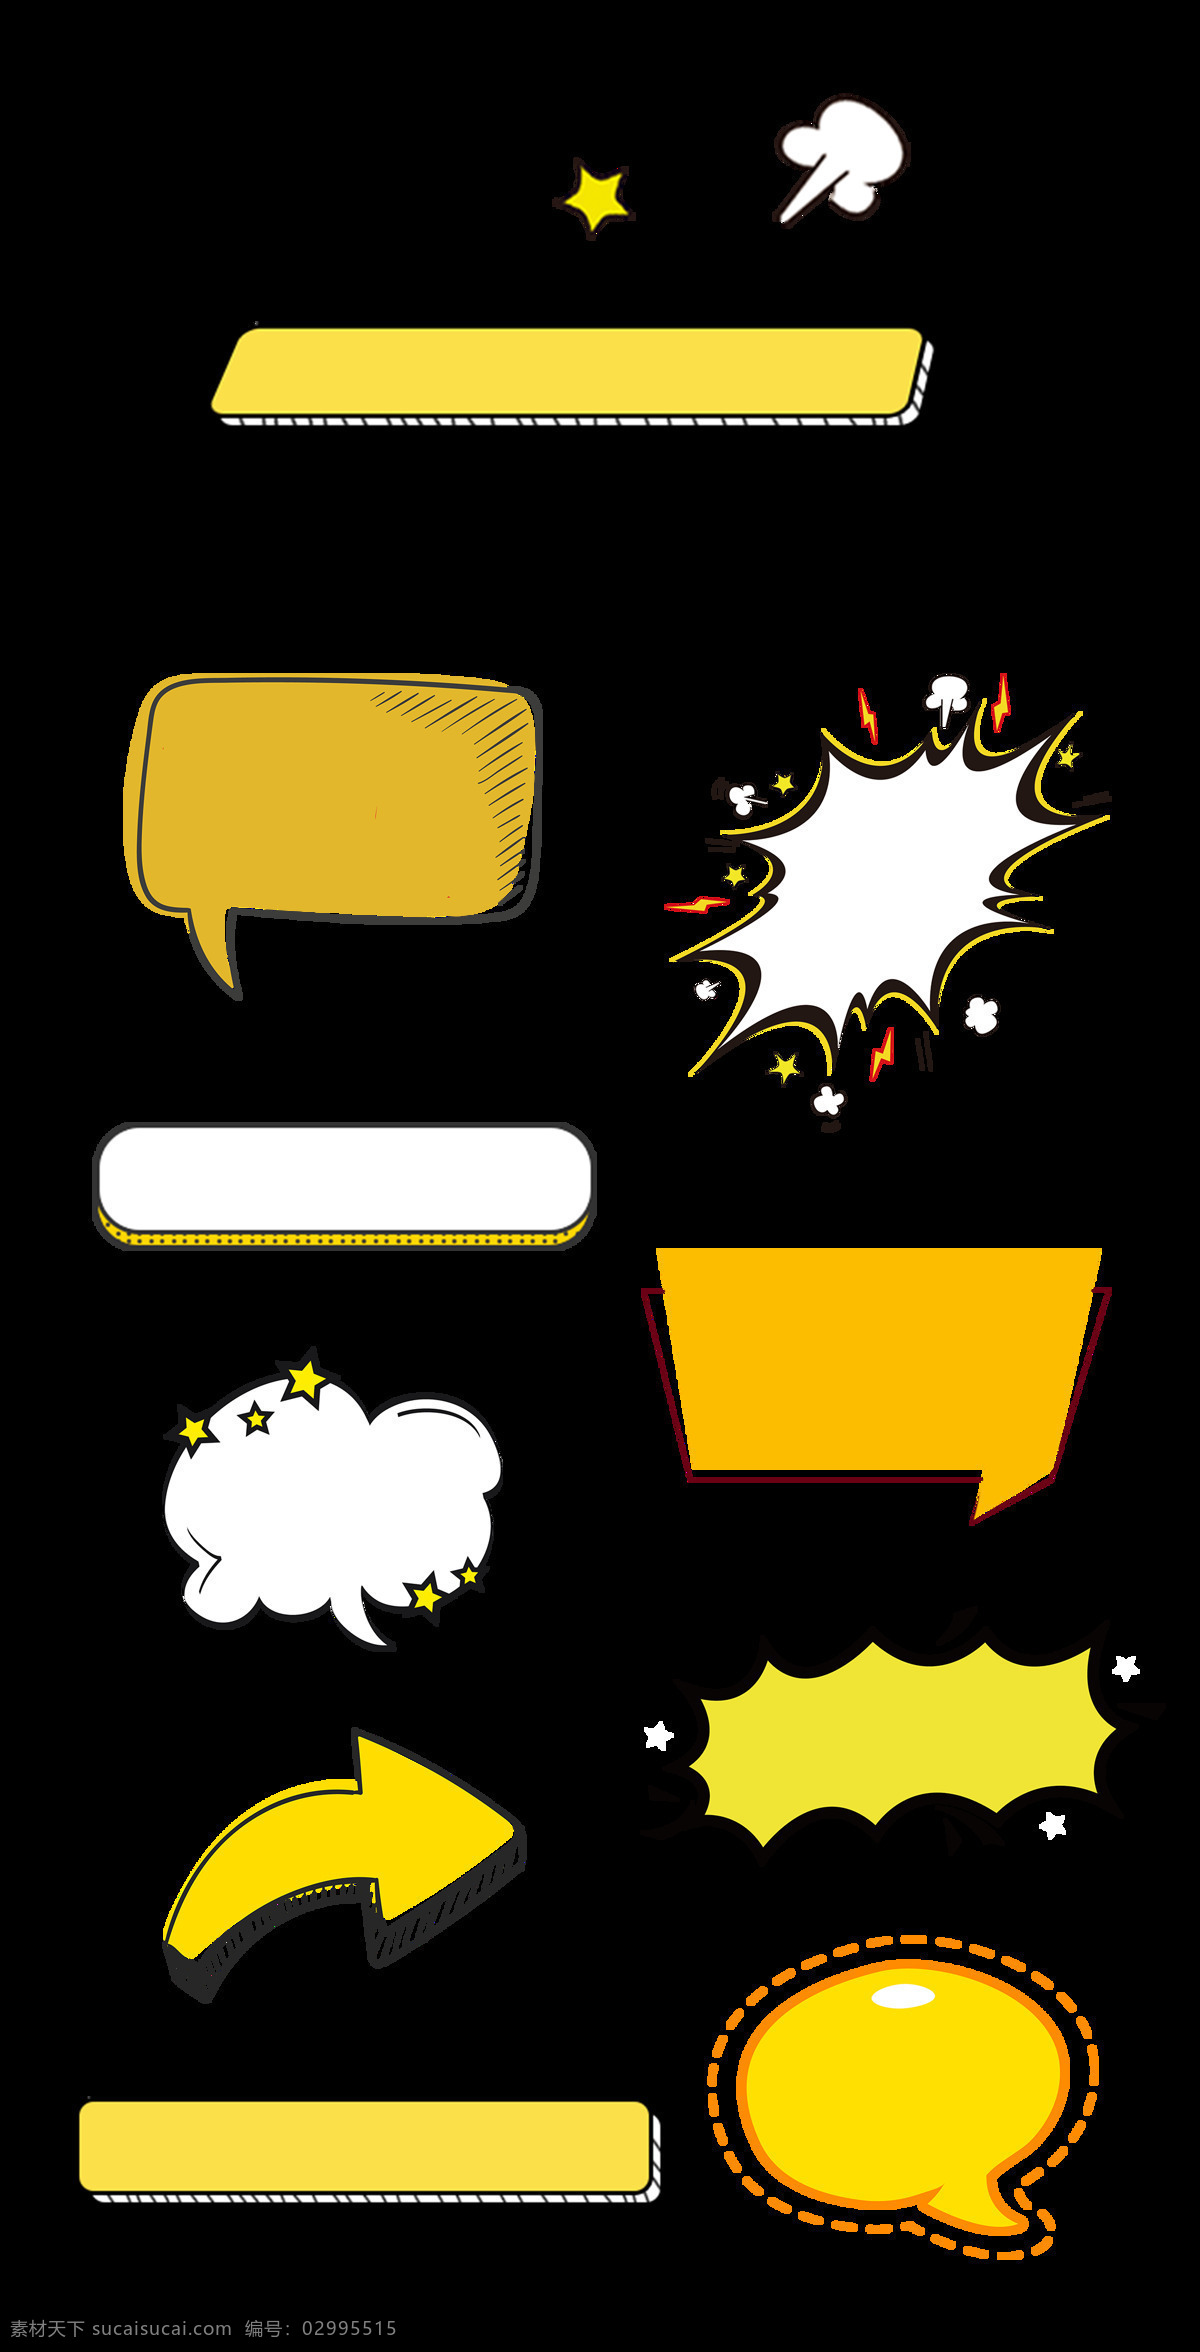 元素符号 对话框 标志 箭头 符号 提示框 标题框 星 云 字 分层